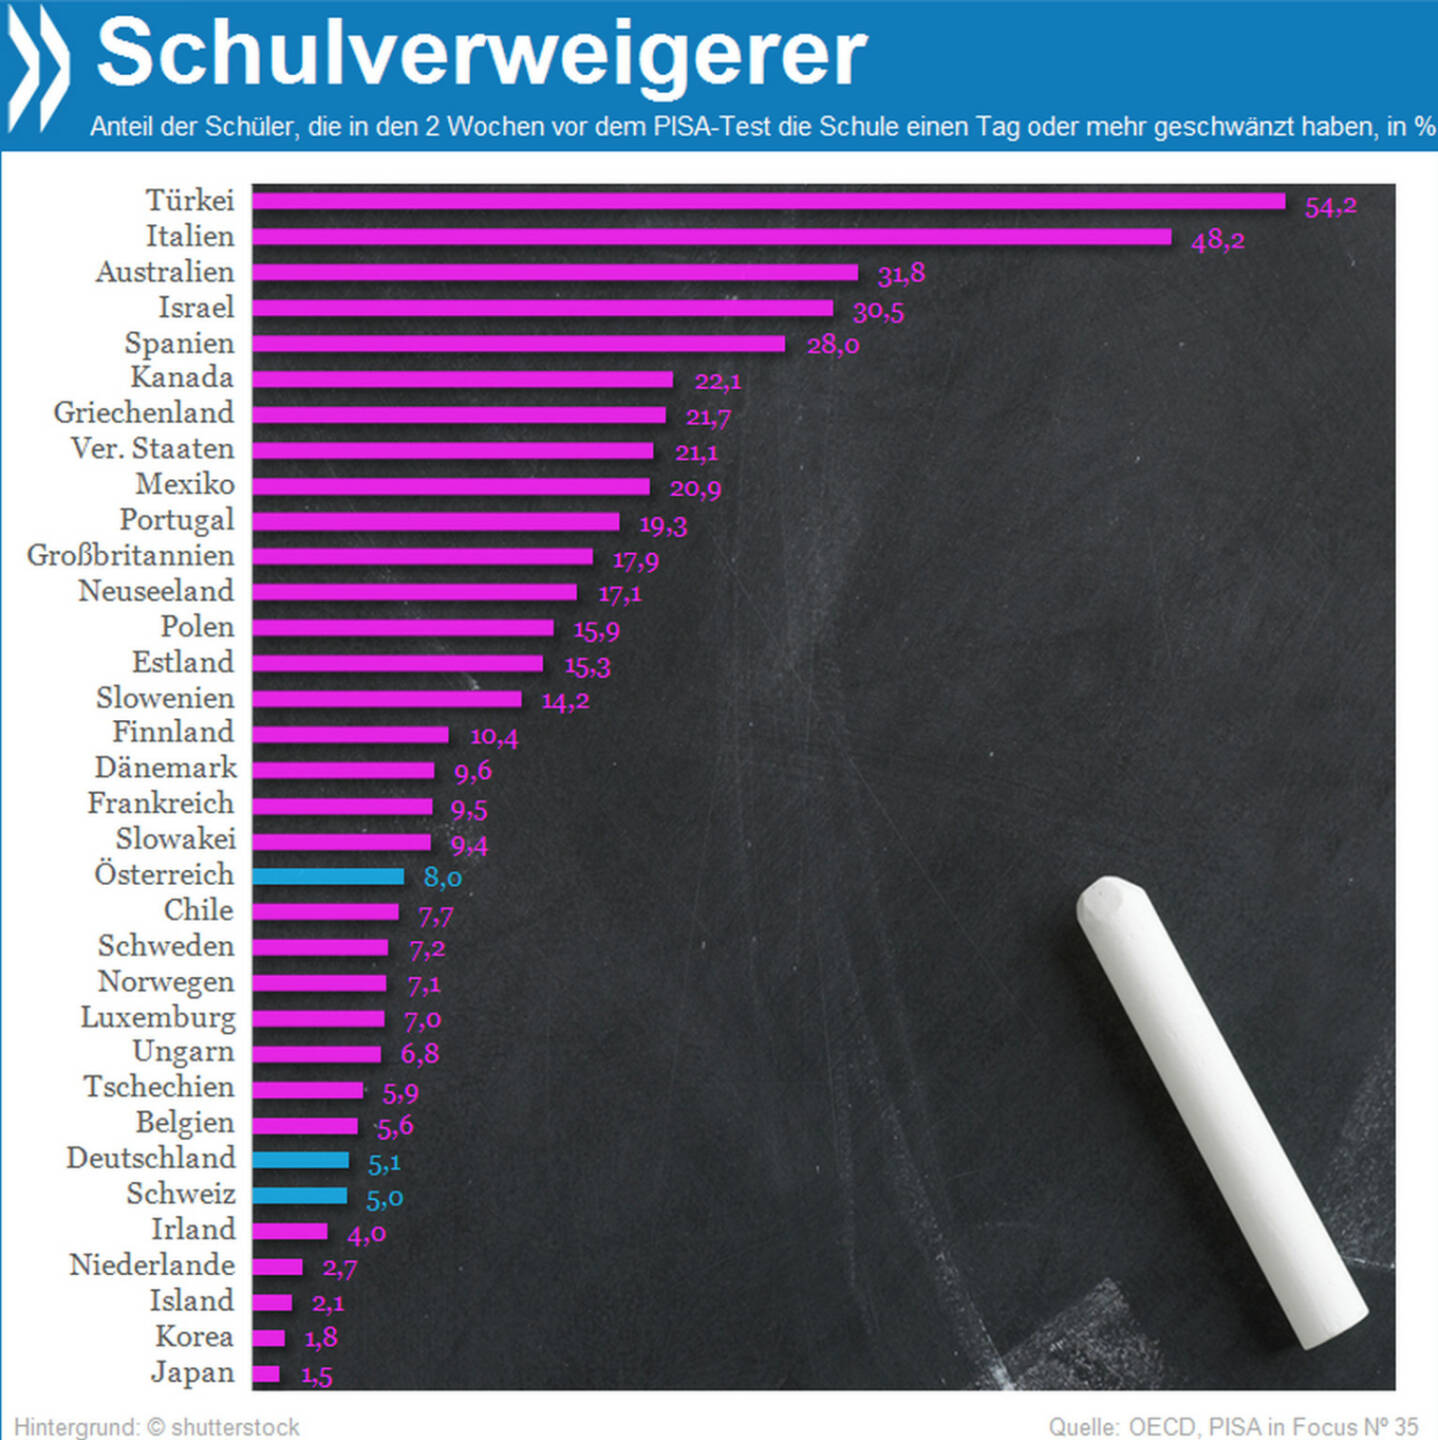 Welches Land hat die meisten Schulschwänzer?
Infos zur Korrelation zwischen Schwänzen und Schülerleistung im PISA-Test gibt es unter http://bit.ly/1gy3ZKW